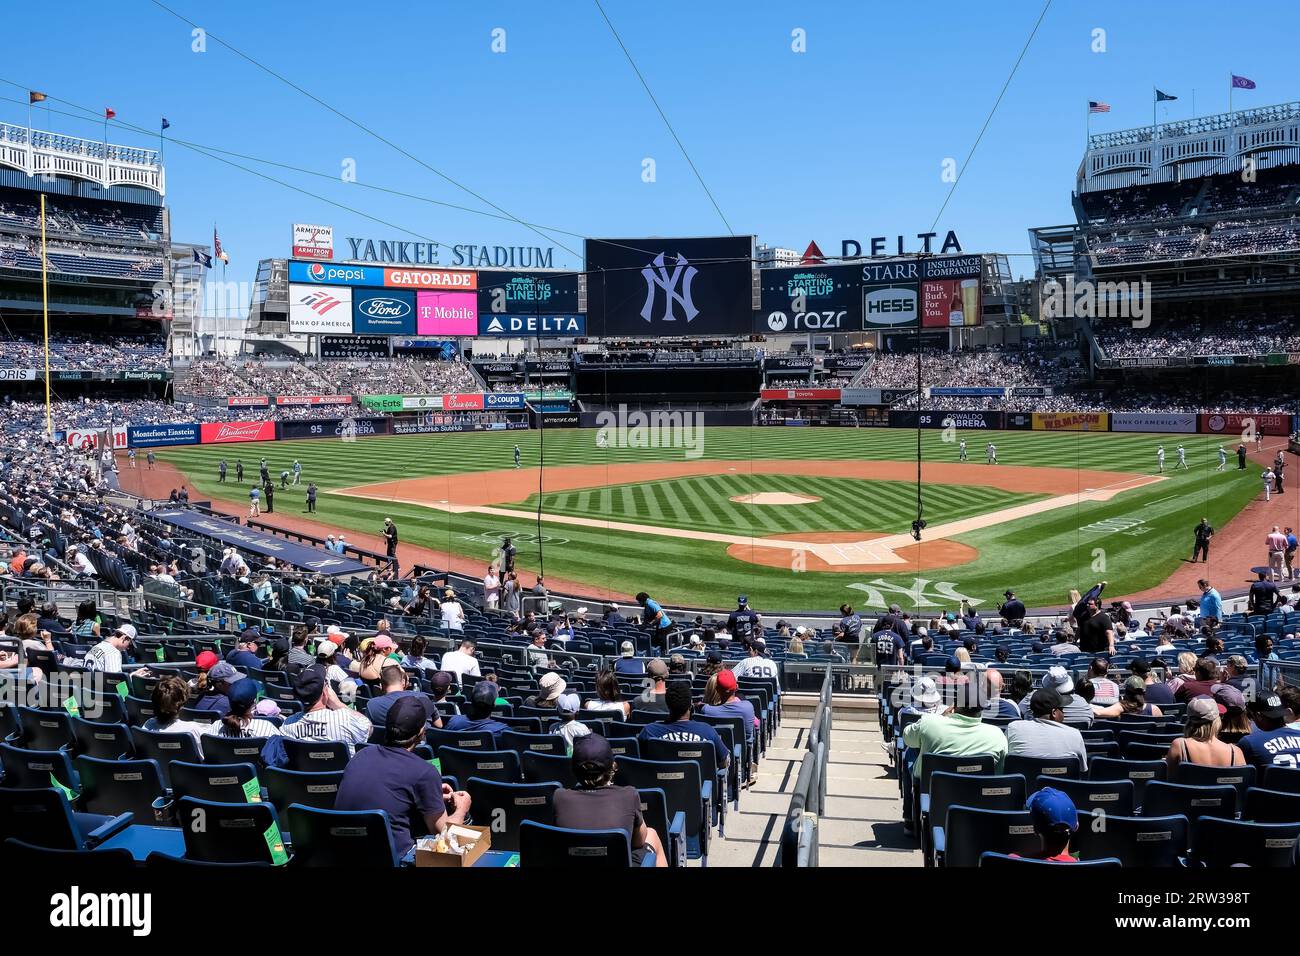 Détail architectural du Yankee Stadium, un stade de baseball et de soccer situé dans le Bronx, à New York, aux États-Unis. Banque D'Images